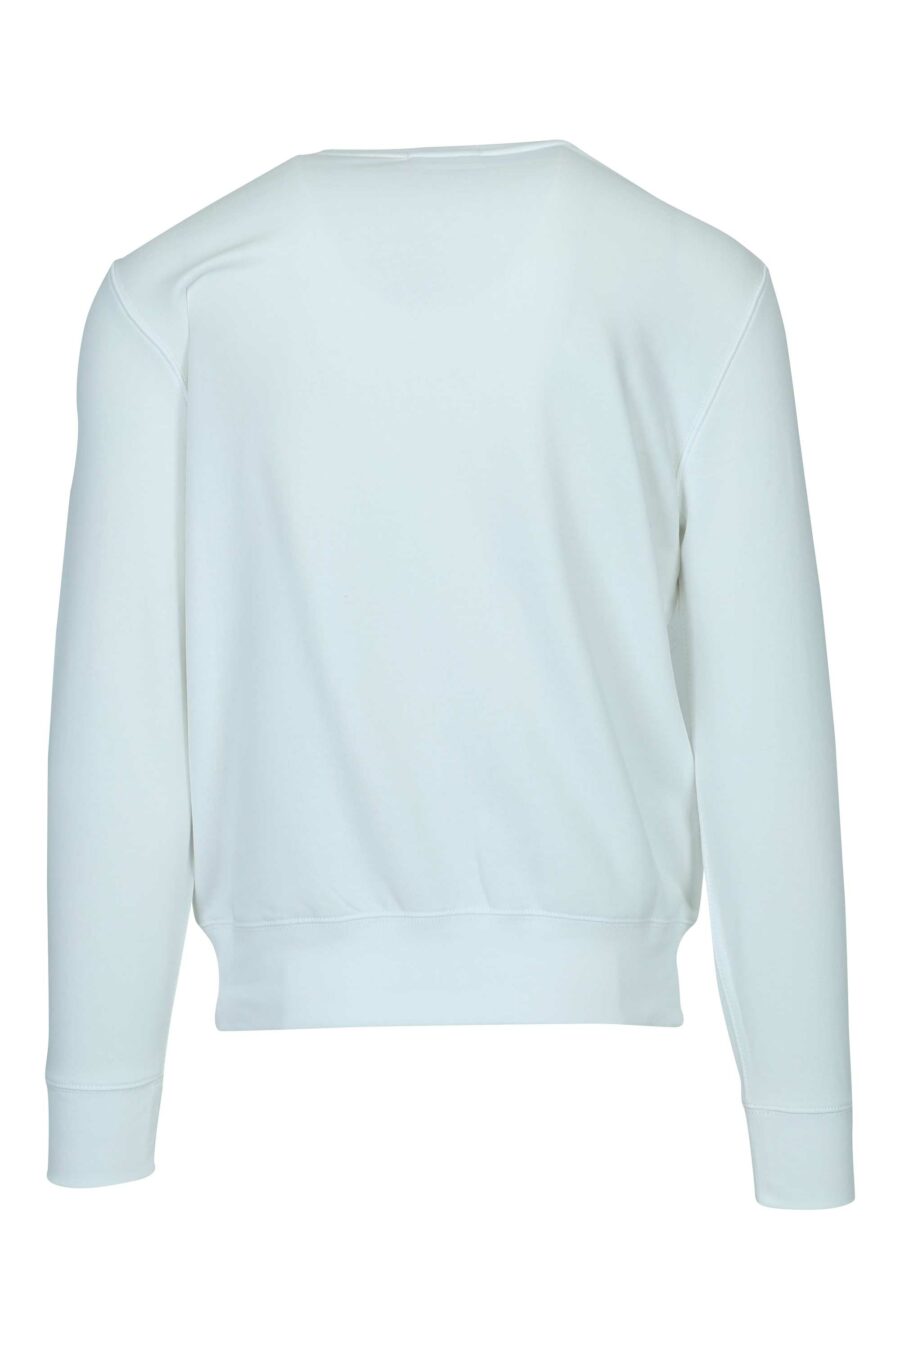 White sweatshirt with maxilogo "polo bear" - 3616536084239 1